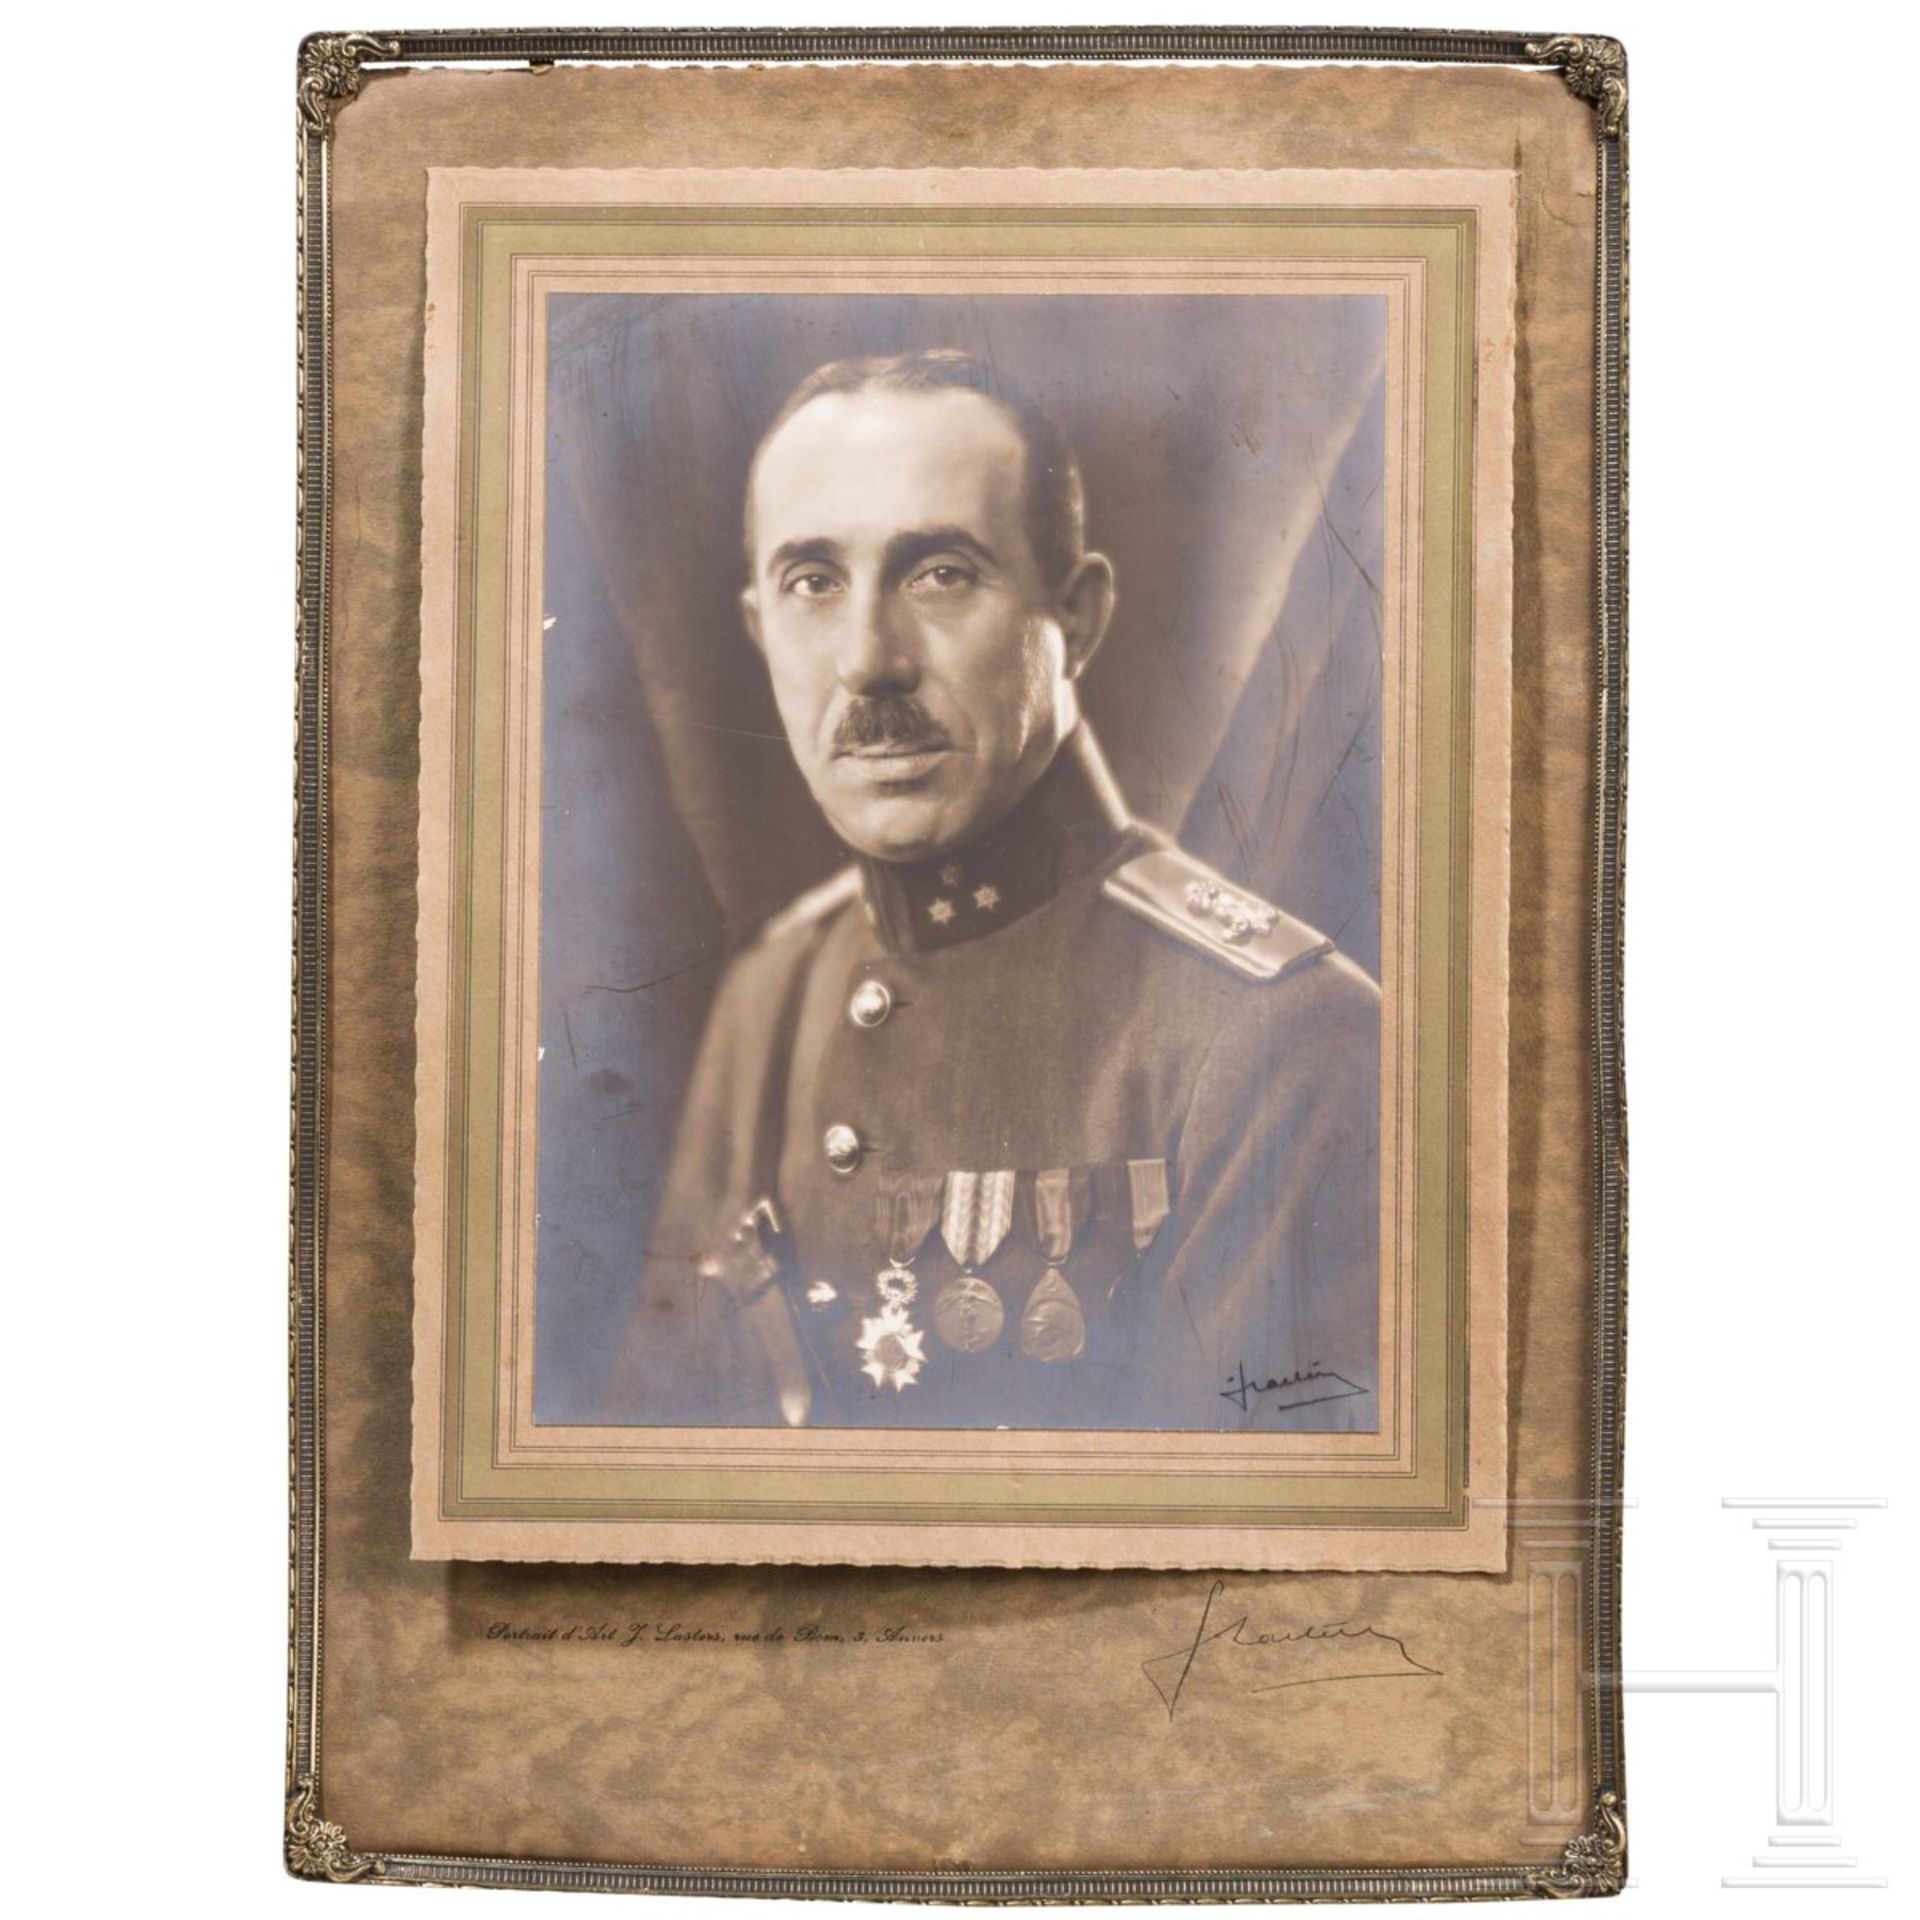 Auszeichnungen und Effekten eines belgischen Captains im 1. Weltkrieg - Image 3 of 4